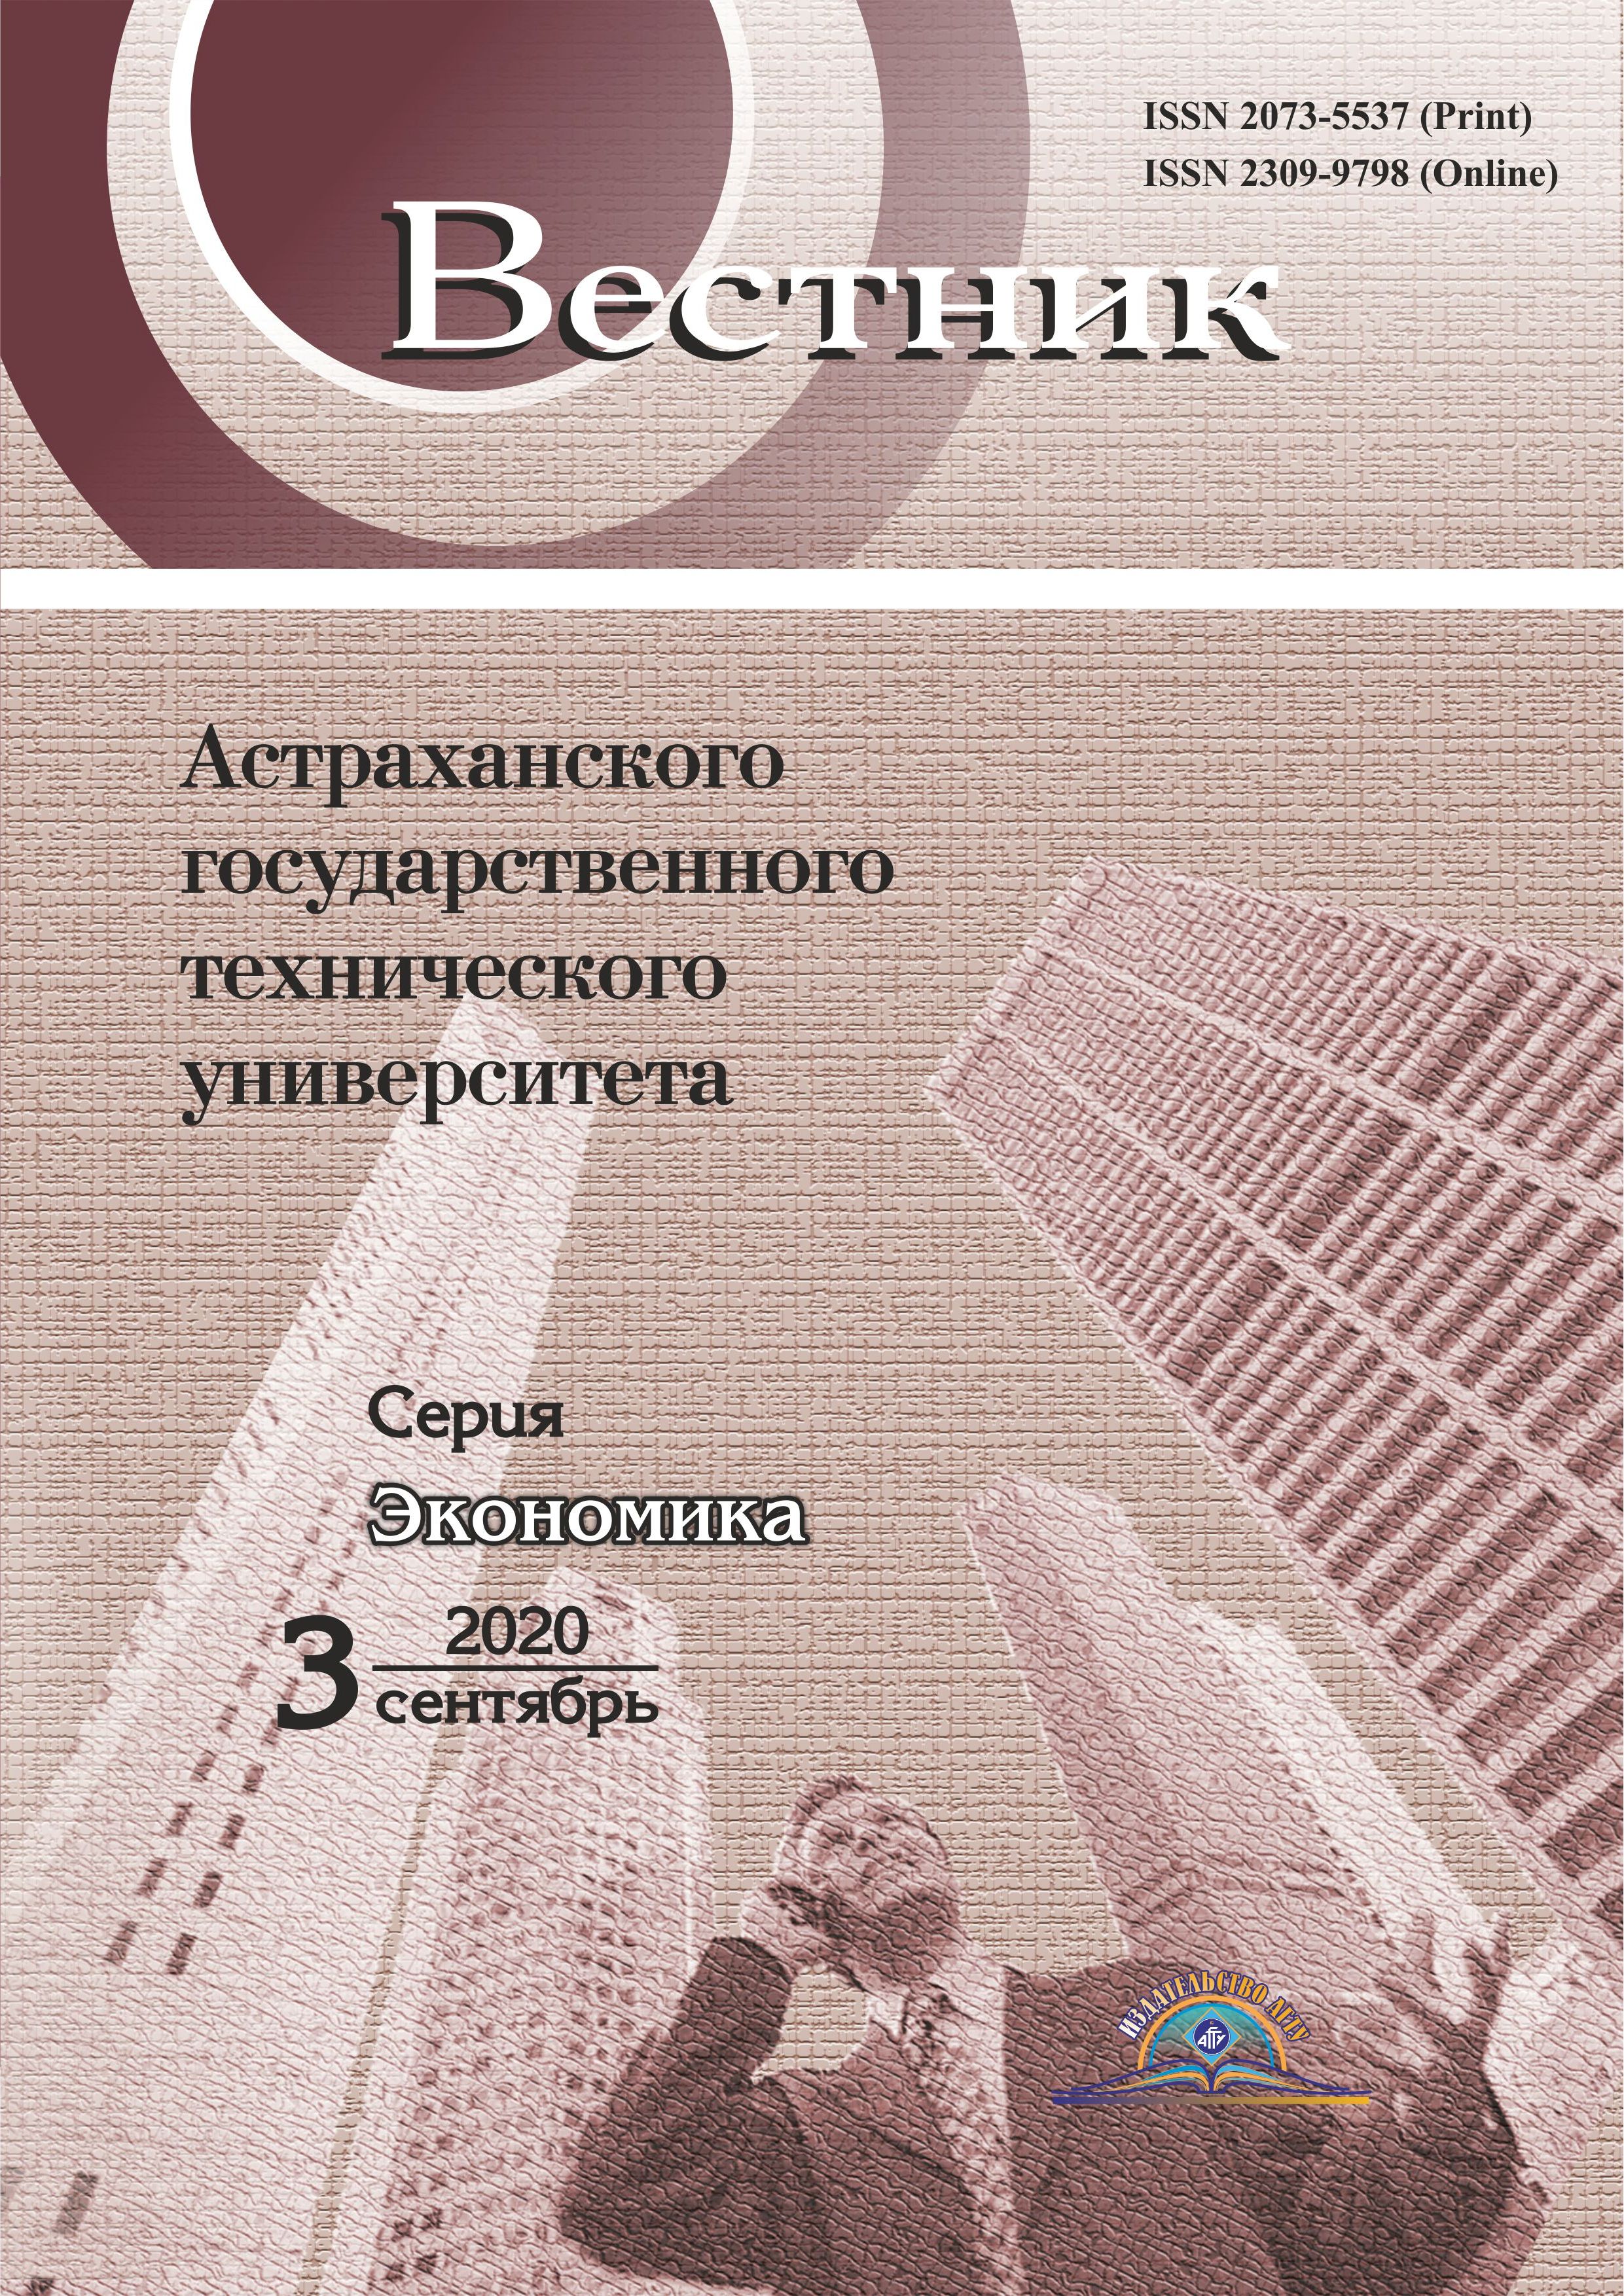             Вопросы определения потребительской корзины для регионов Российской Федерации в части непродовольственных товаров и услуг (на примере Астраханской области)
    